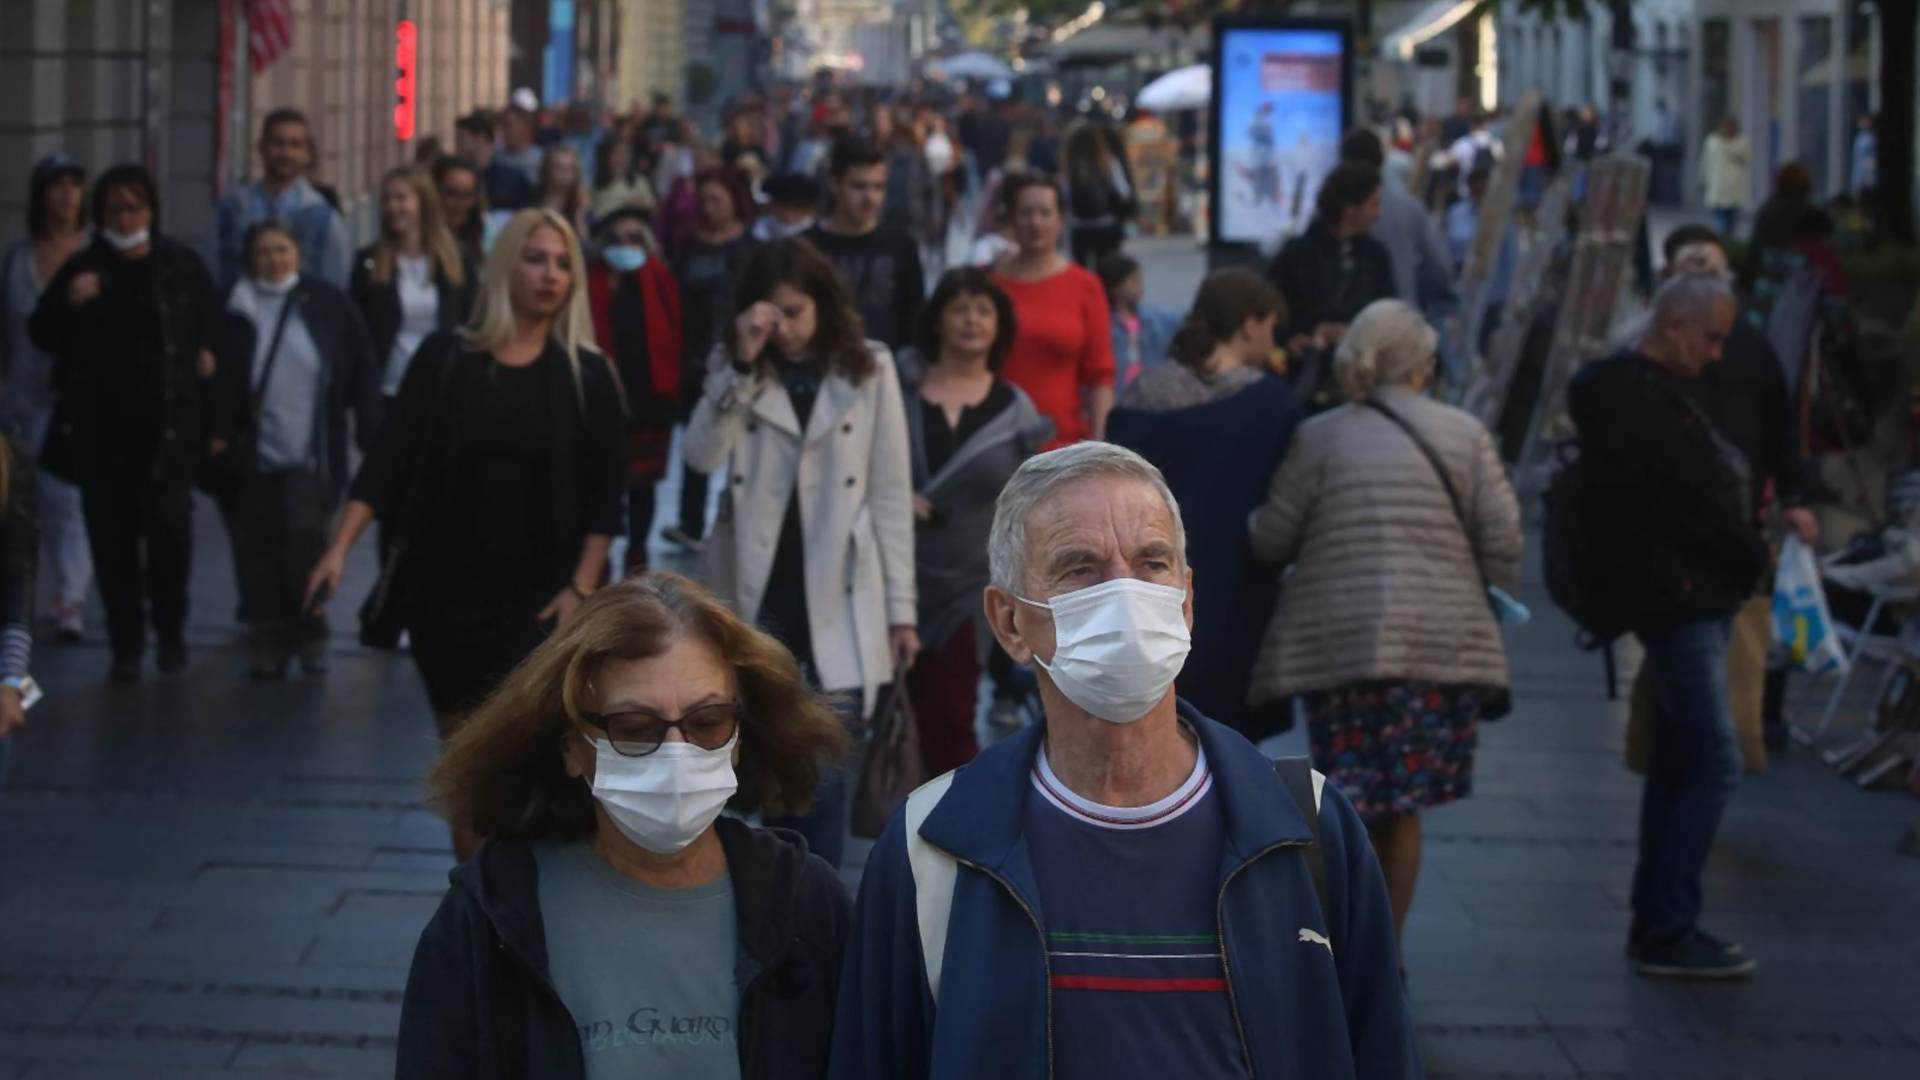 Koronu ćemo i preživeti, ali zagađeni vazduh teško: Beograd opet među najzagađenijim gradovima na svetu